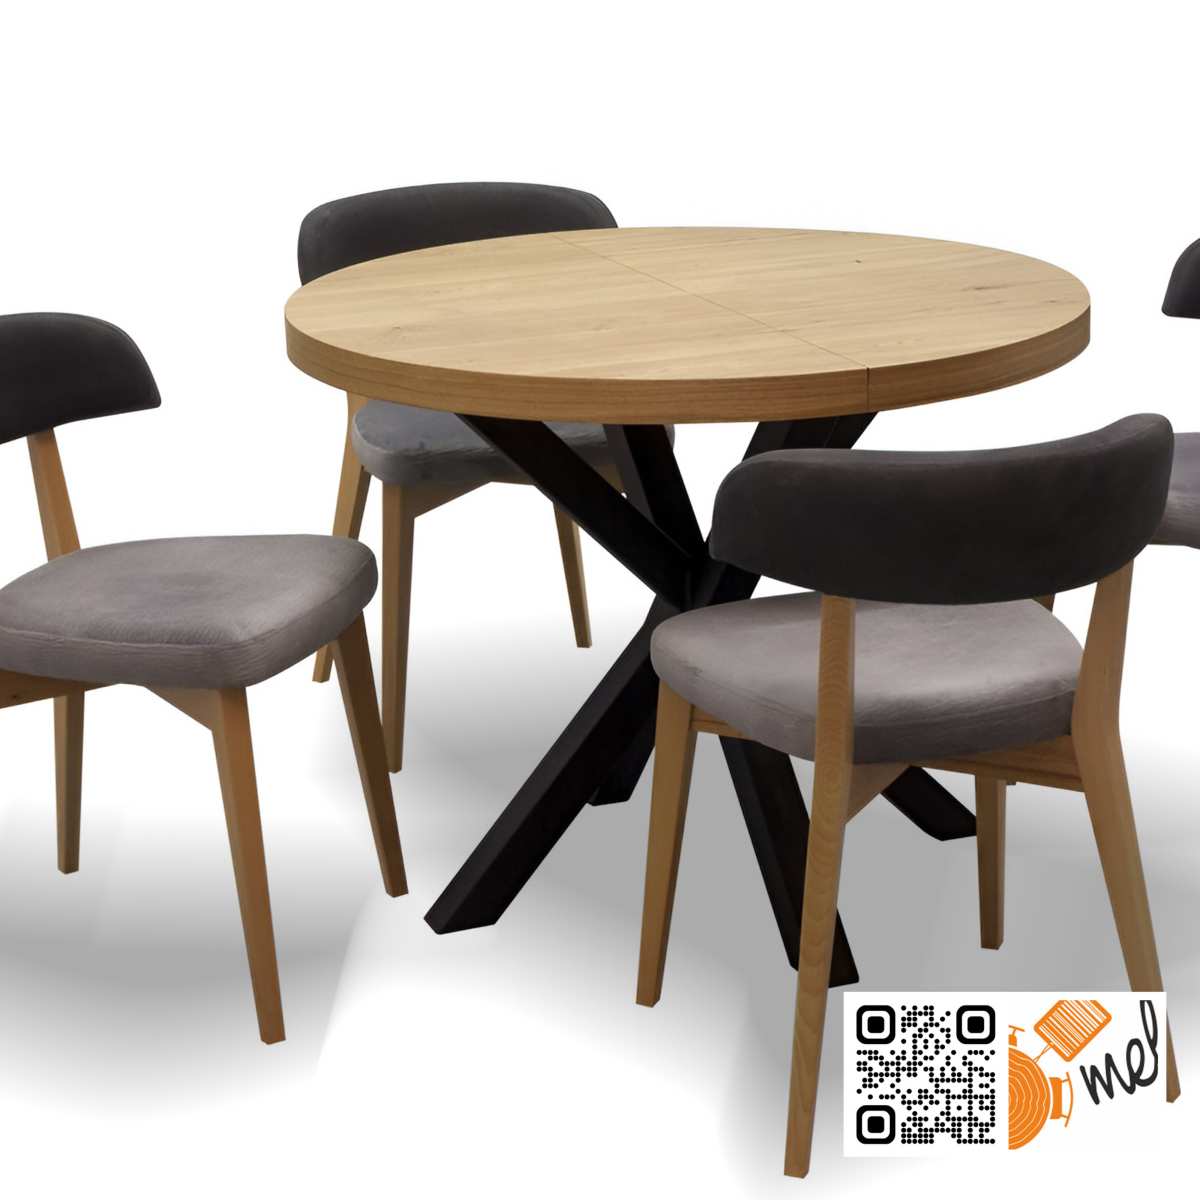 Okrągły stół z krzesłami Z23 industrialny loft